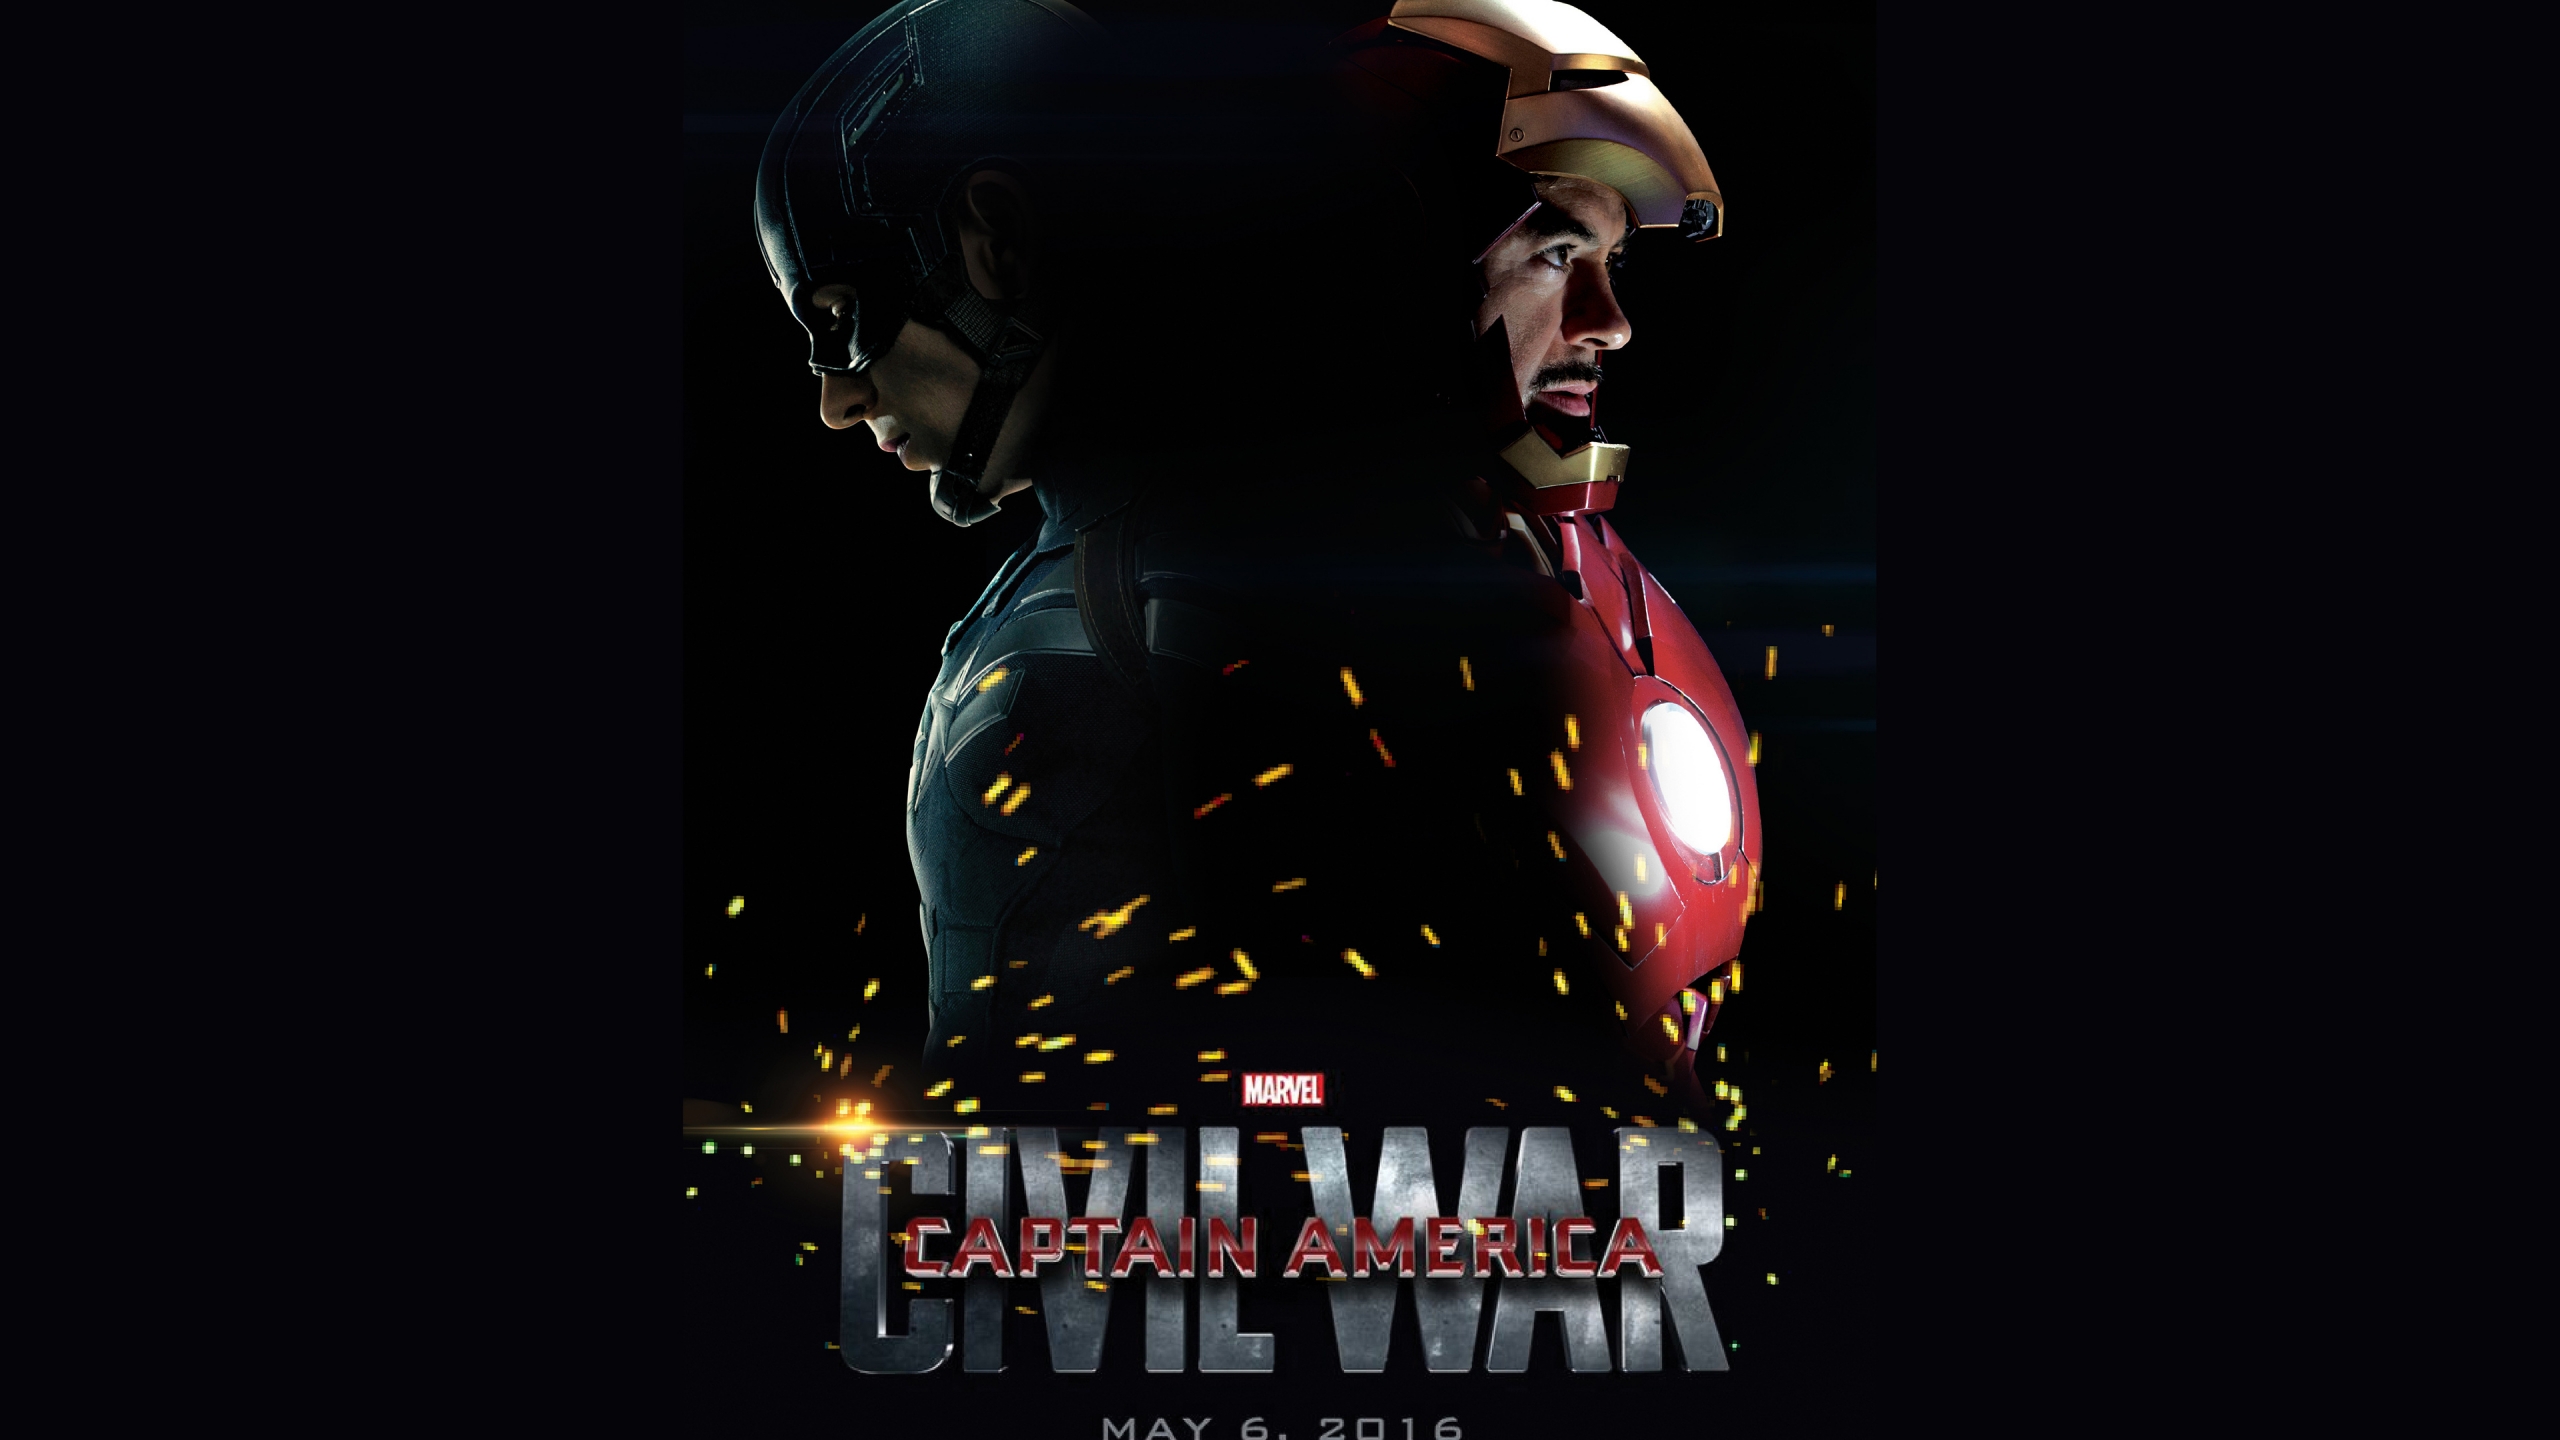 Captain America Civil War 2016 for 2560x1440 HDTV resolution